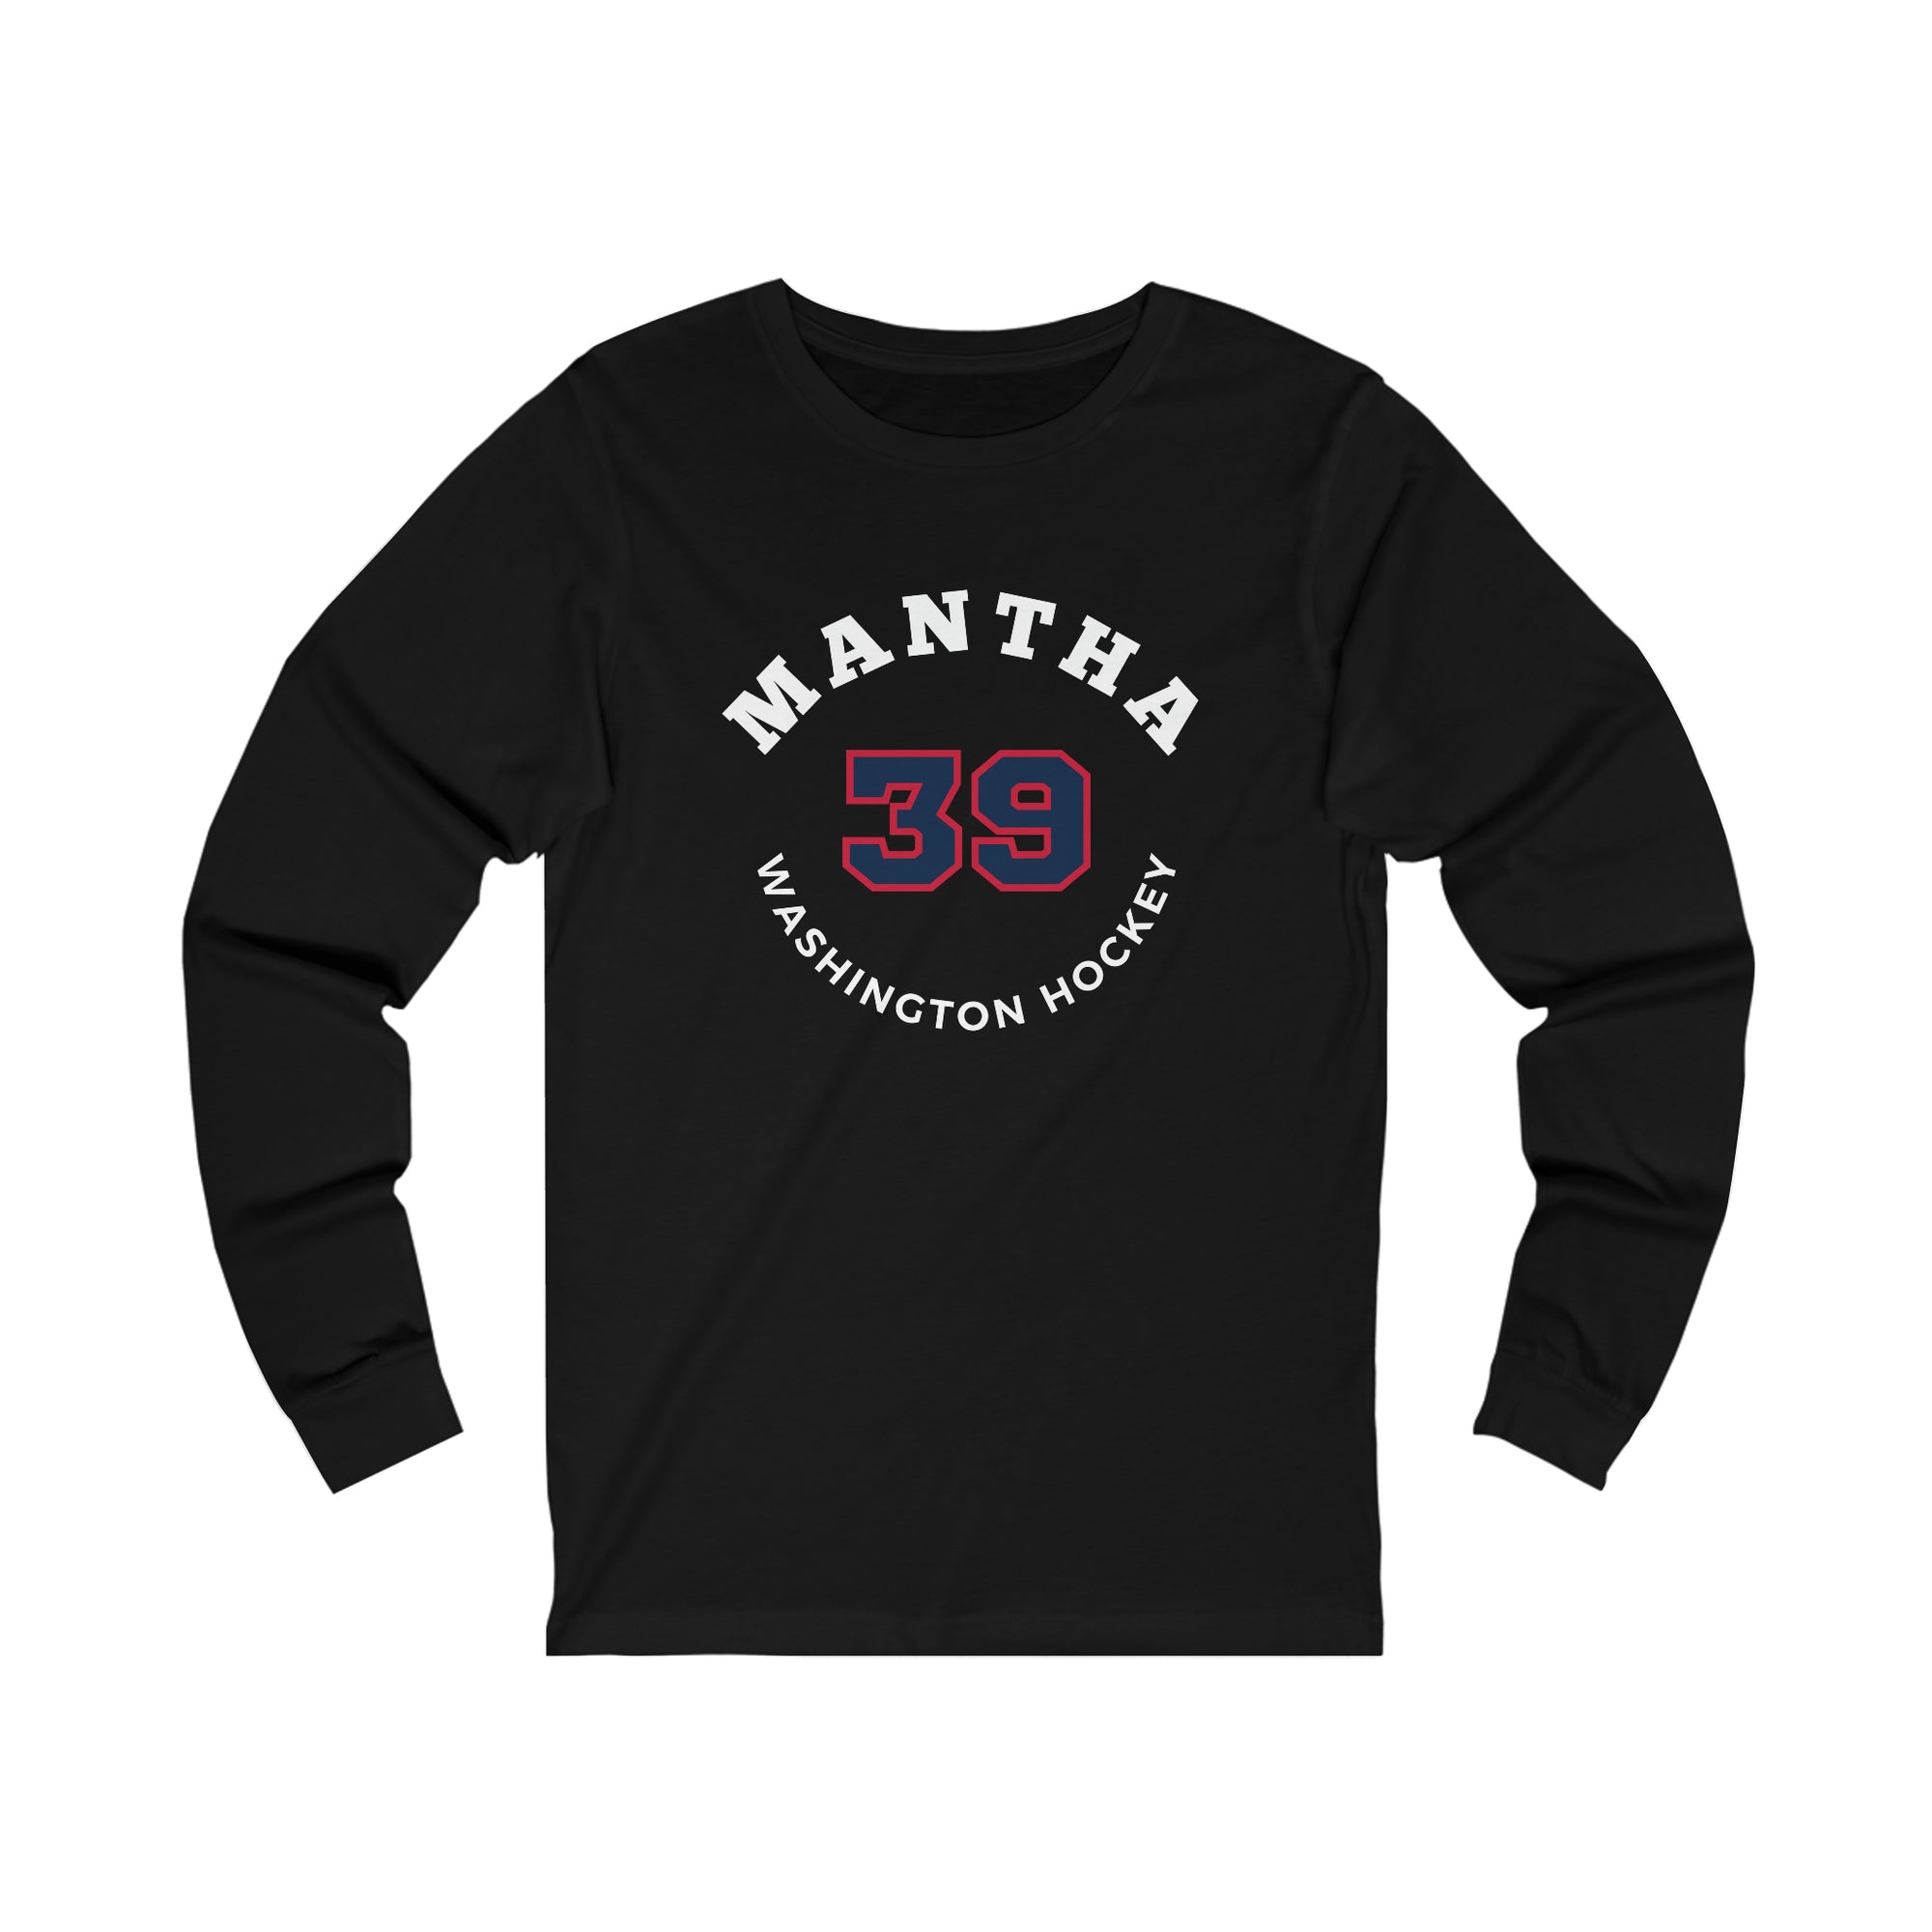 Mantha 39 Washington Hockey Number Arch Design Unisex Jersey Long Sleeve Shirt